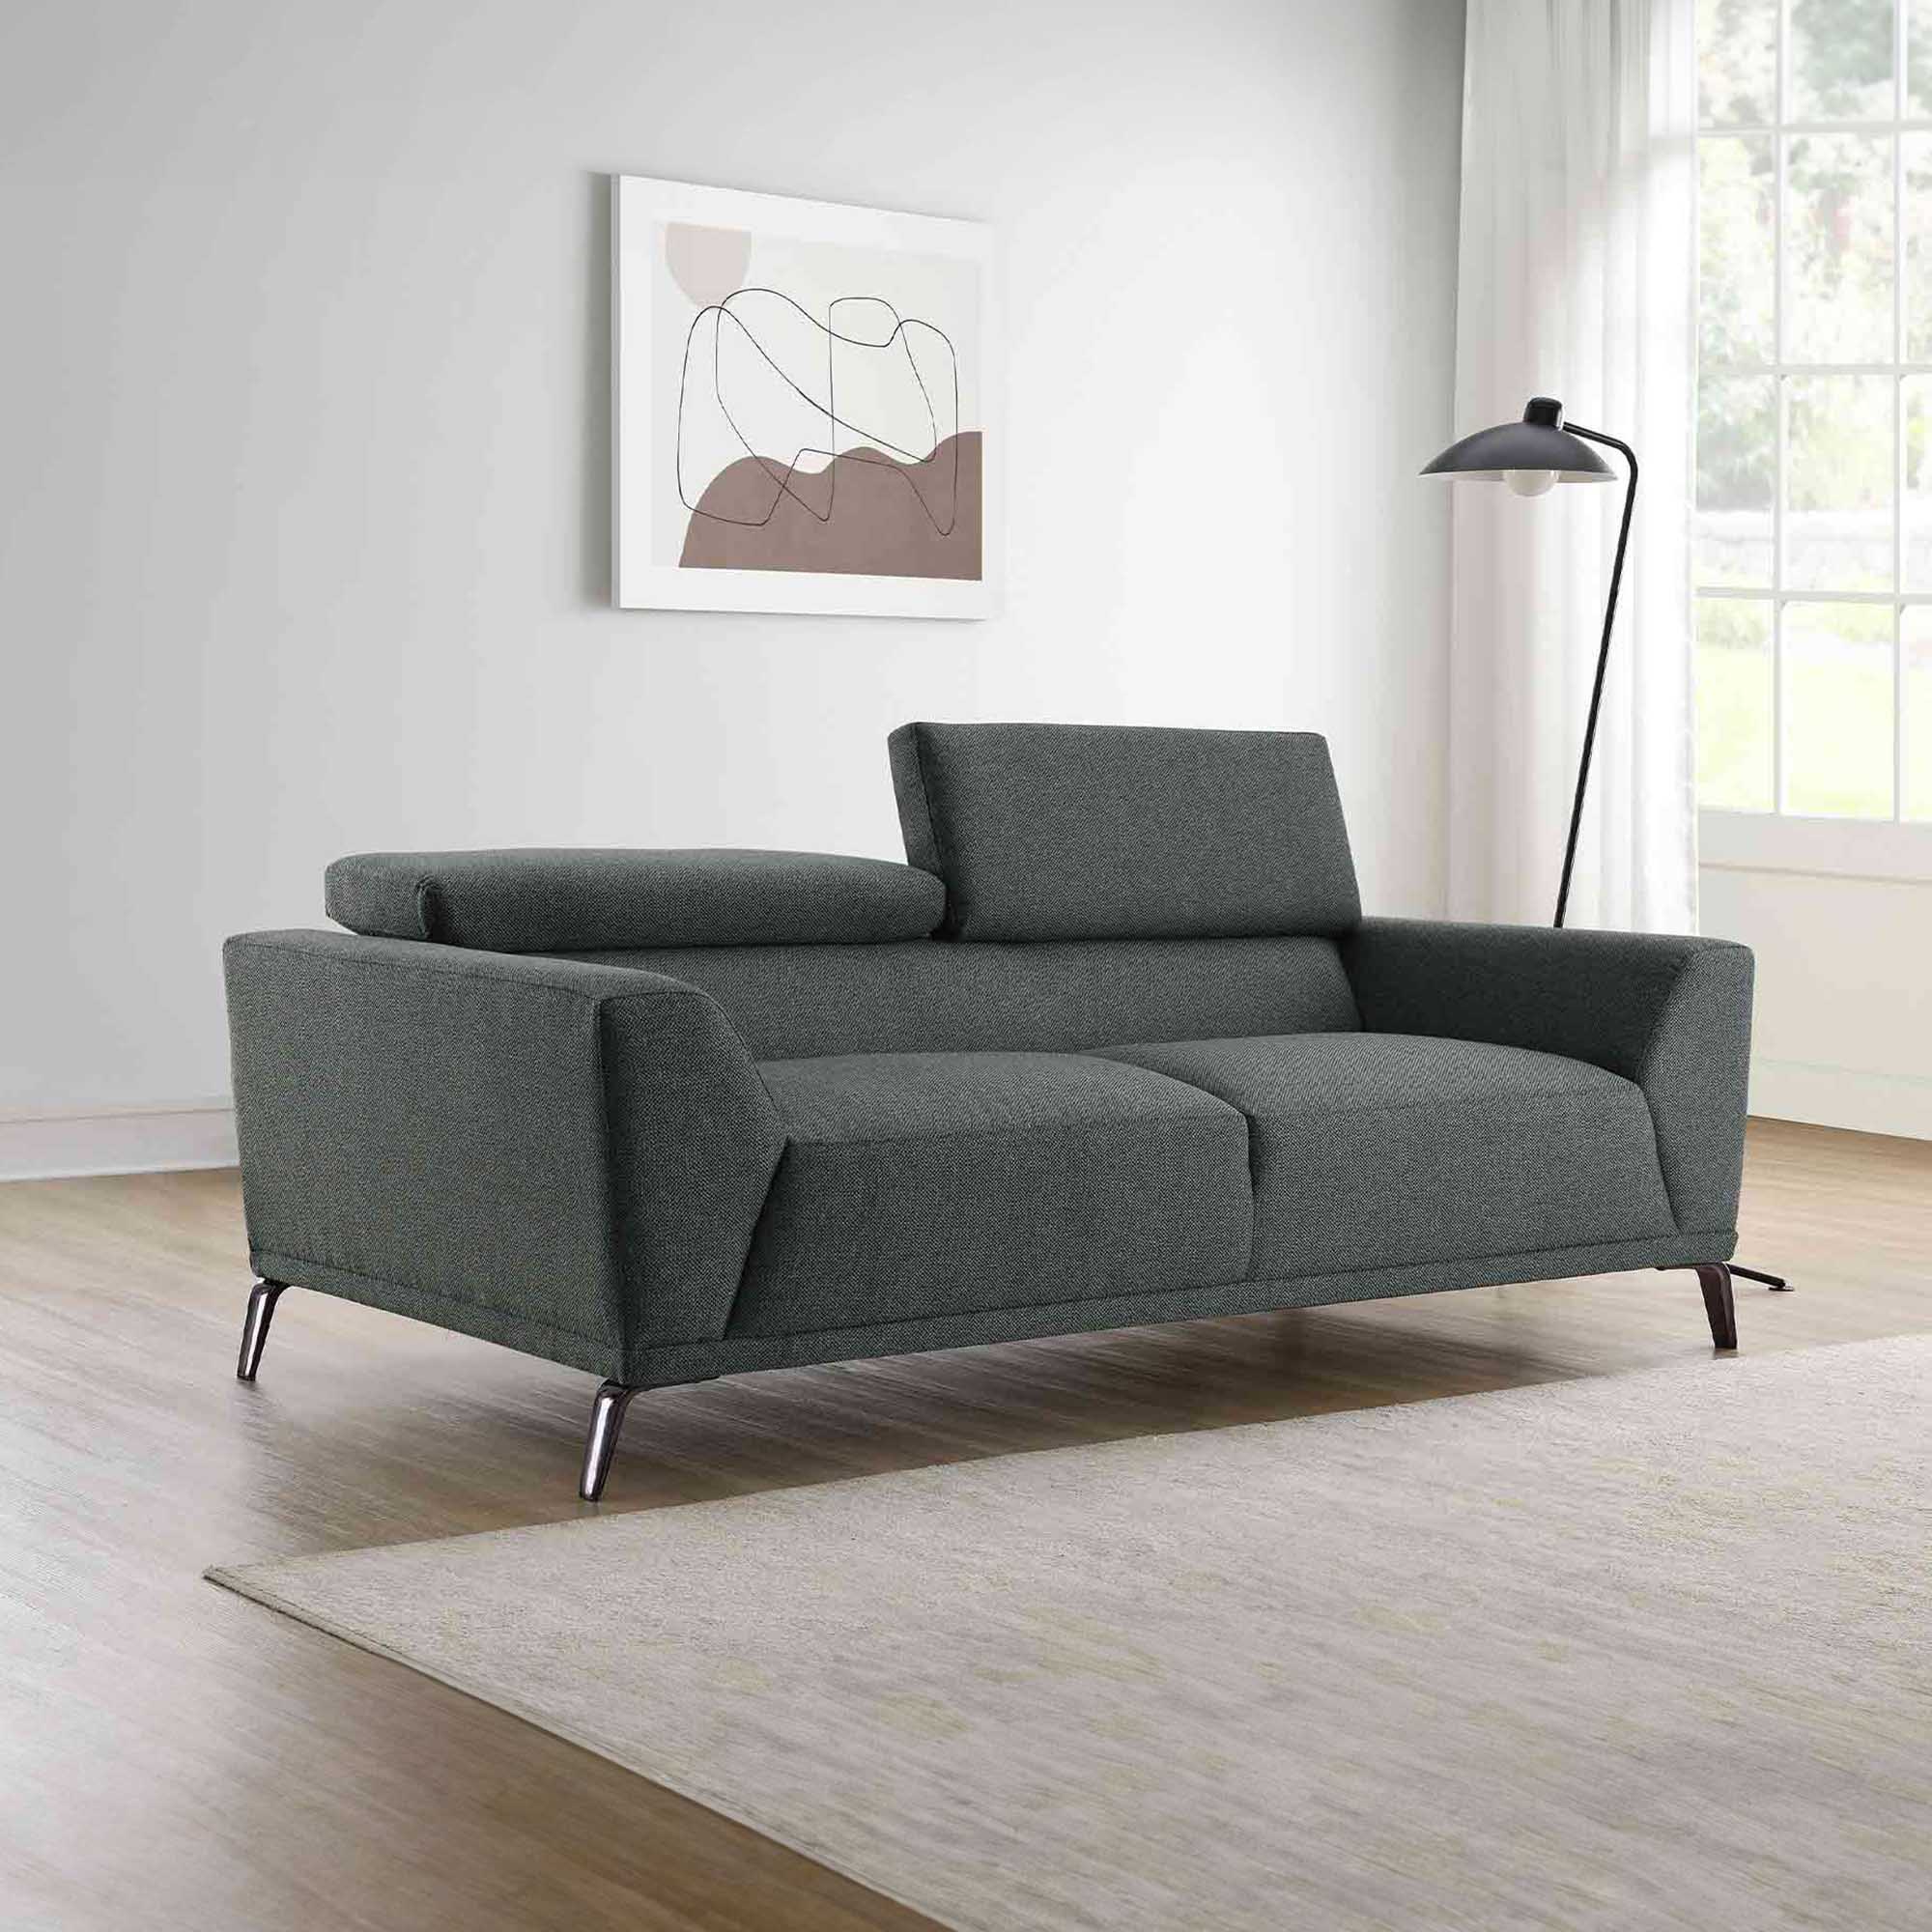 Canapé contemporain 2 places en tissu gris foncé